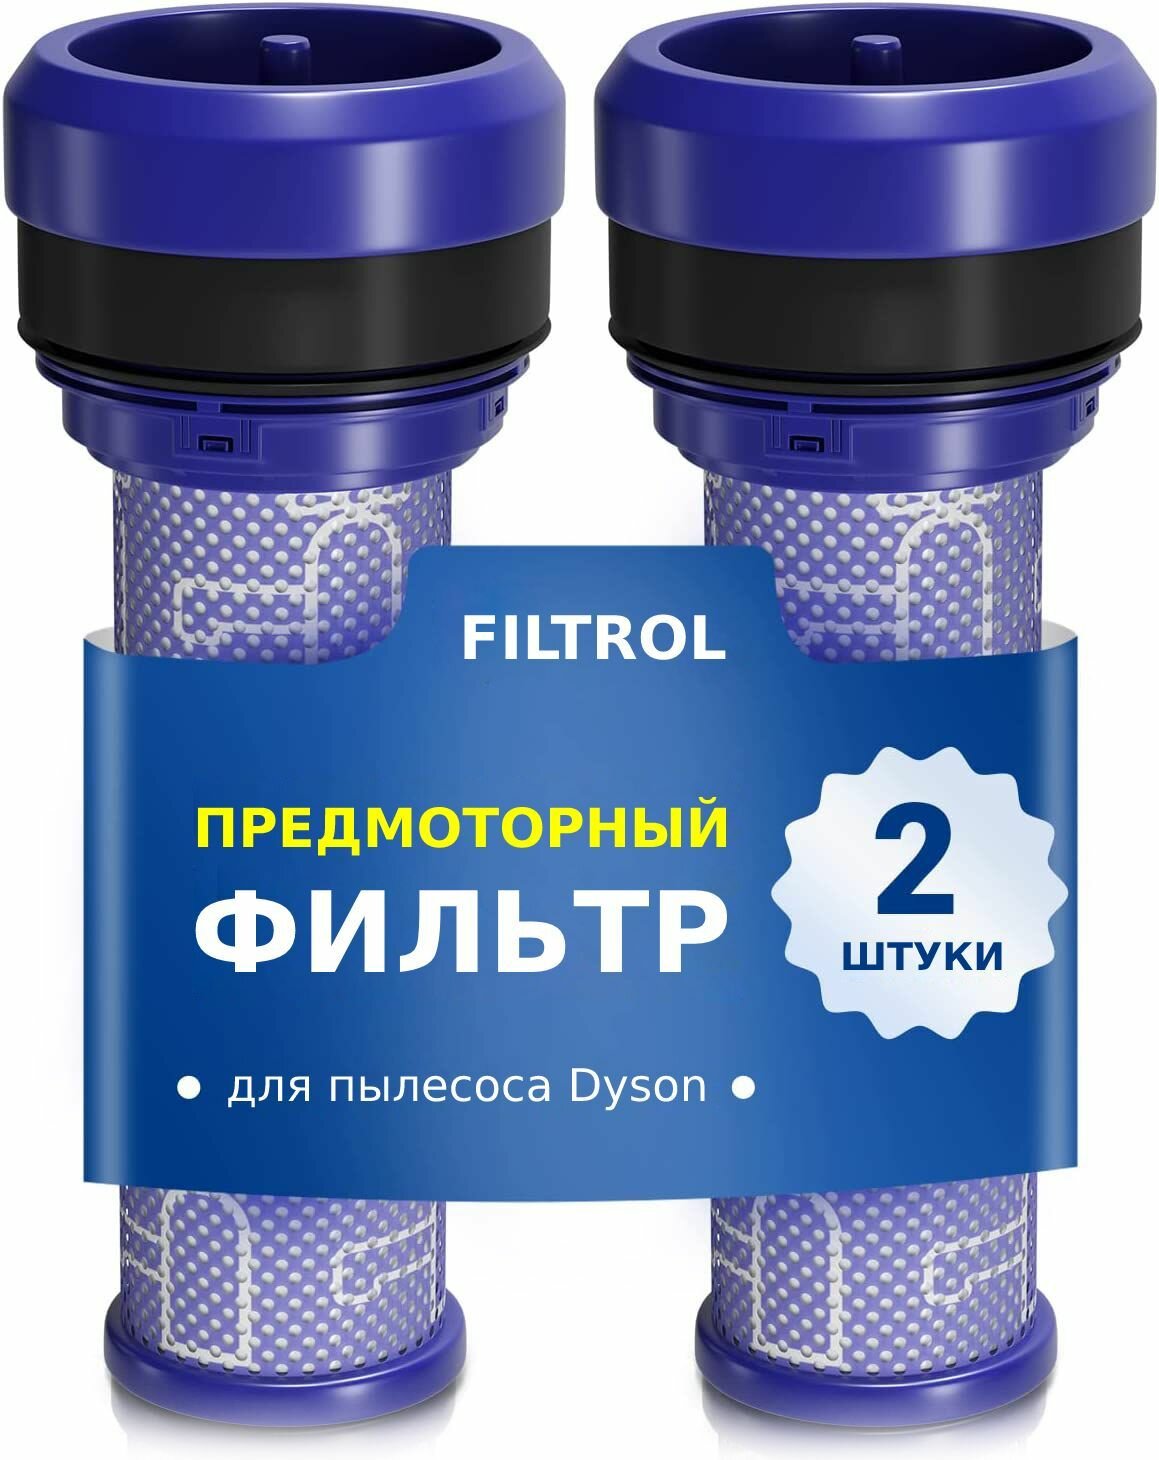 HEPA фильтр 2 шт. для пылесоса Dyson тип 923413-01 серия DC30, DC33, DC37, DC39, DC41, DC41С, DC39i, DC39 Animal